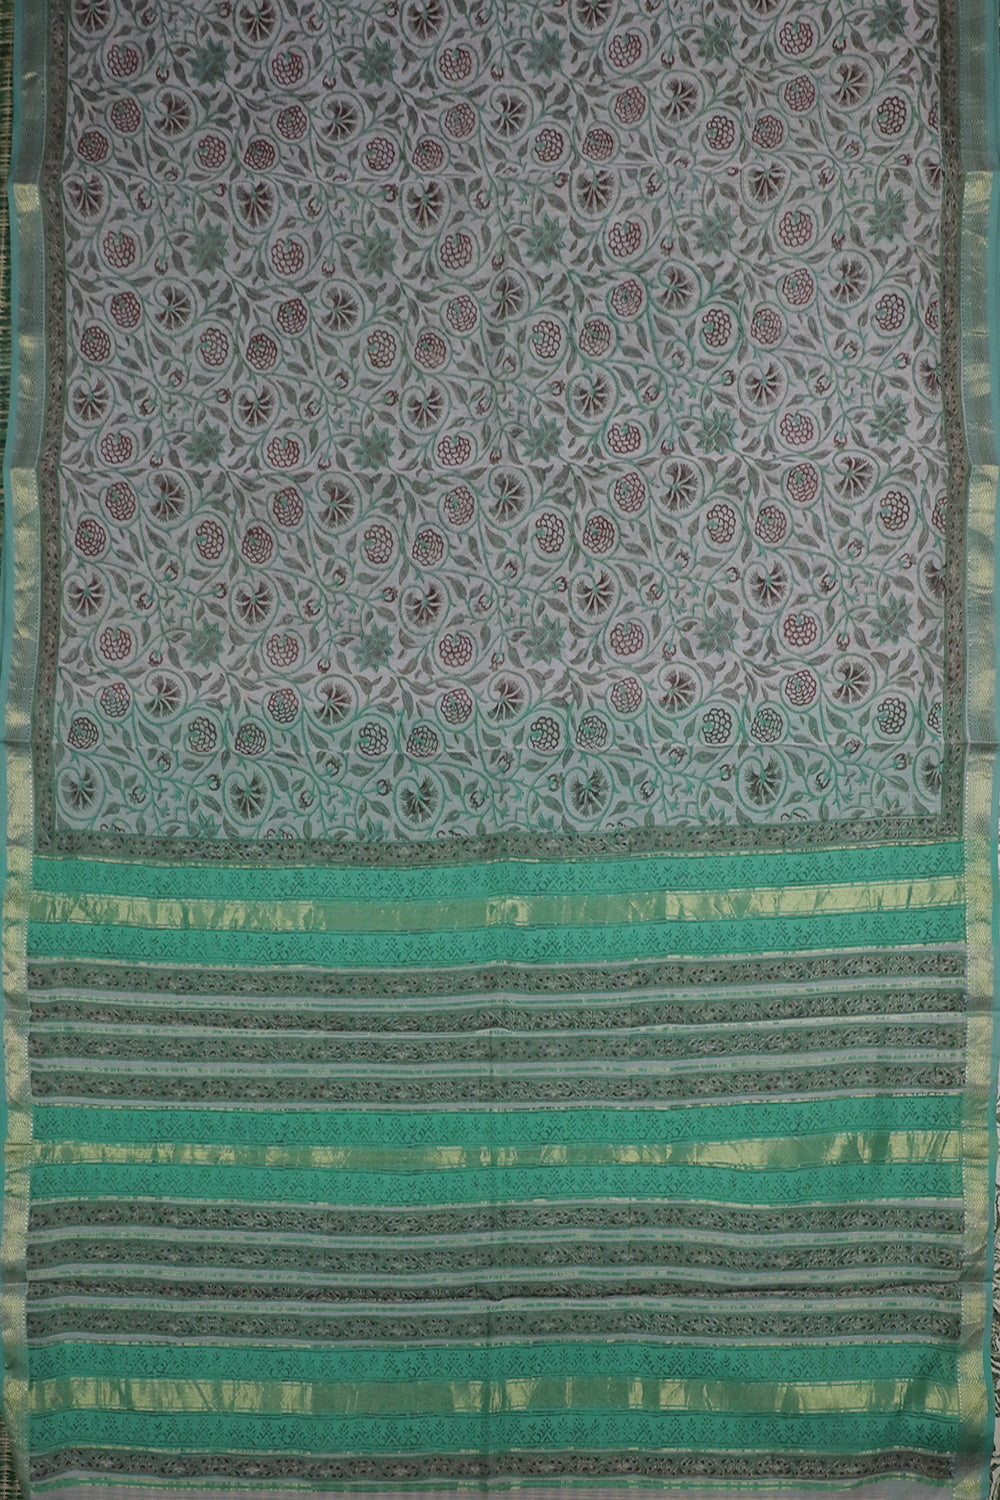 Printed Silk Cotton Sarees - Matkatus